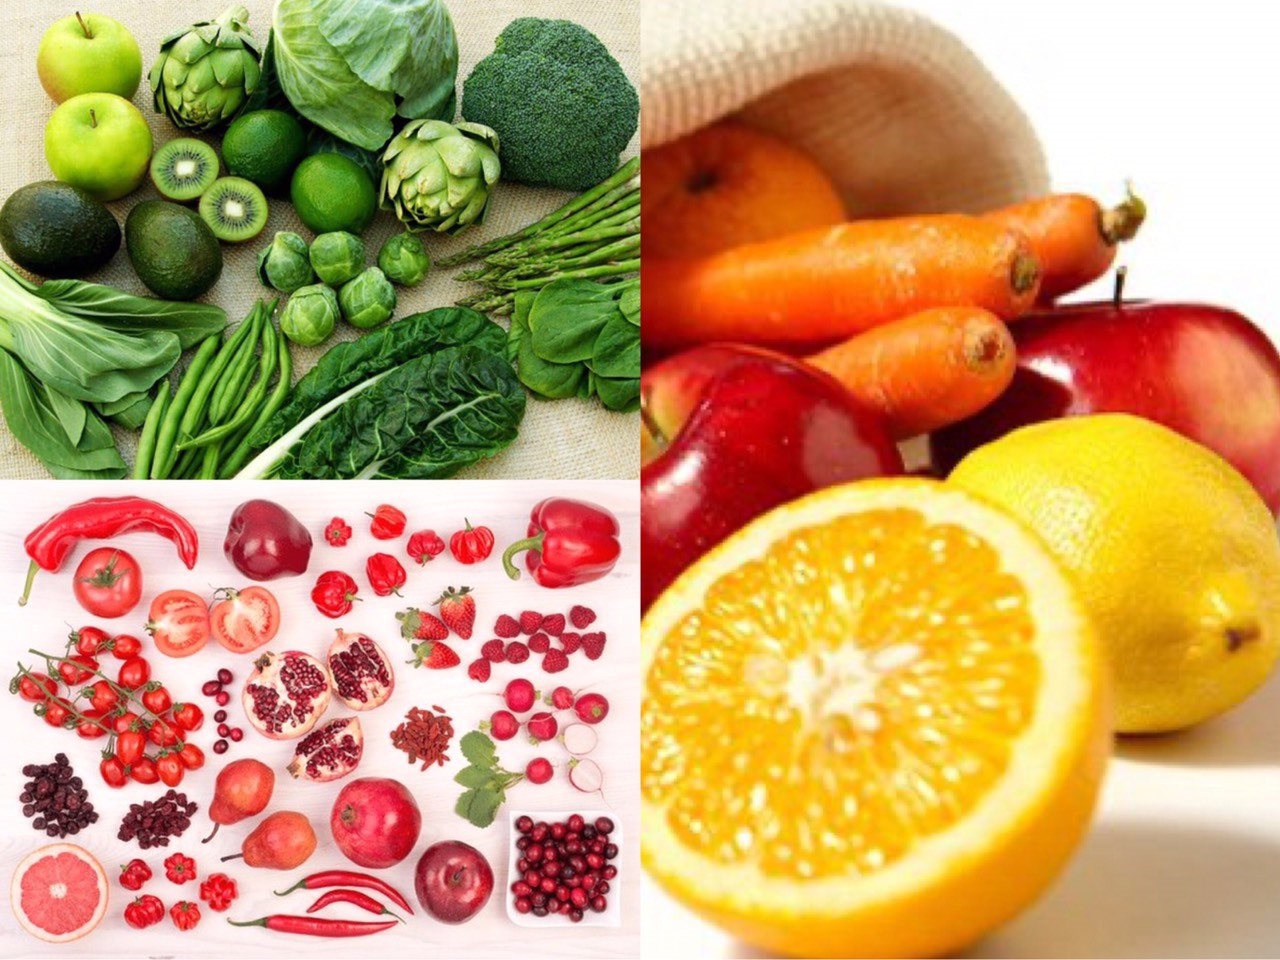 Các loại rau màu xanh thẫm, hoa quả màu đỏ, cam được khuyến khích sử dụng. Ảnh đồ họa: Hương Giang